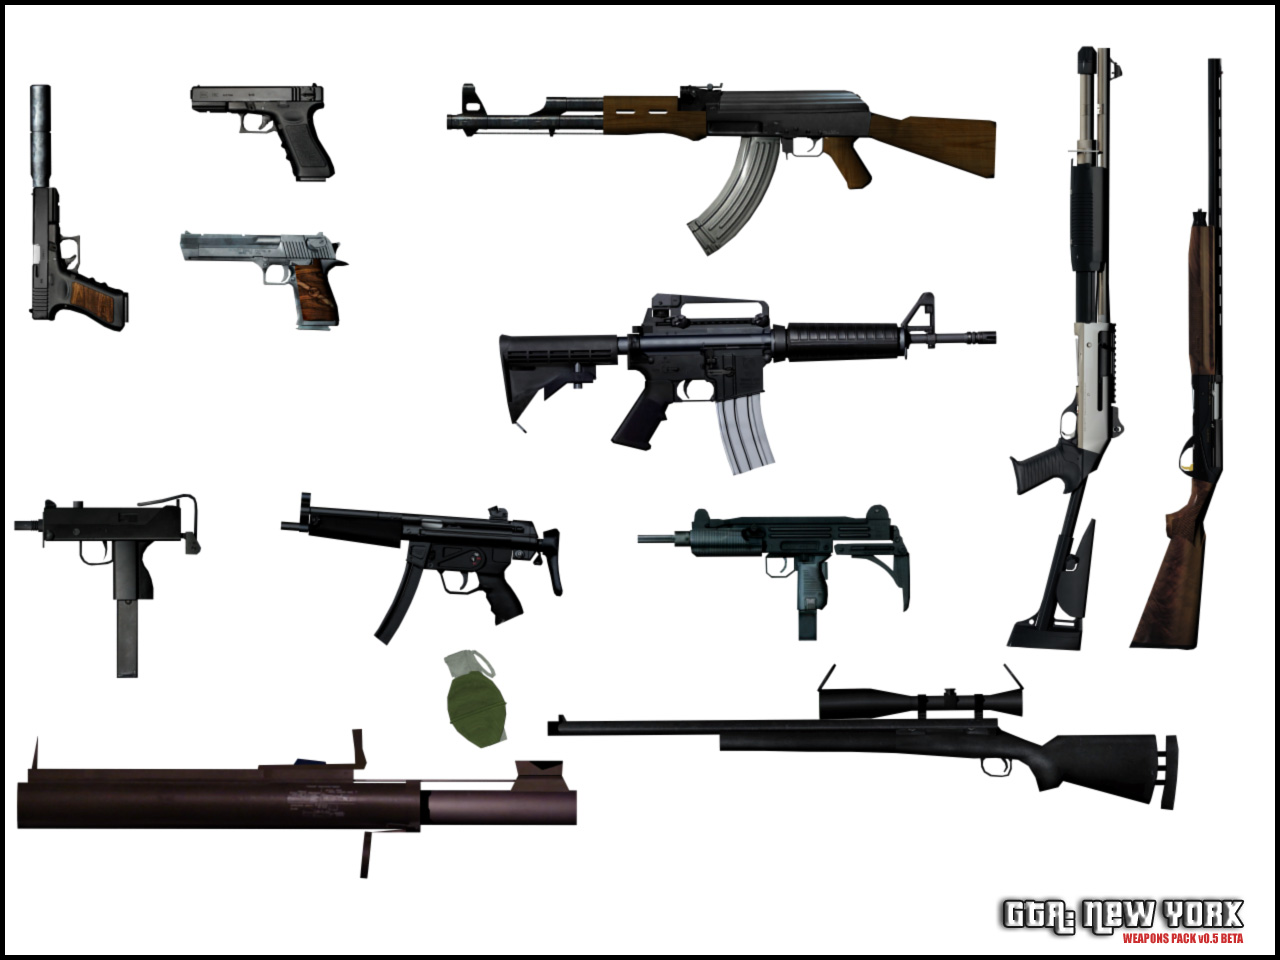 Игра гта 5 оружие. Оружие из ГТА 5. GTA San Andreas оружие 1 оружие. GTA sa Andreas оружие Pack. GTA San Weapons пак.